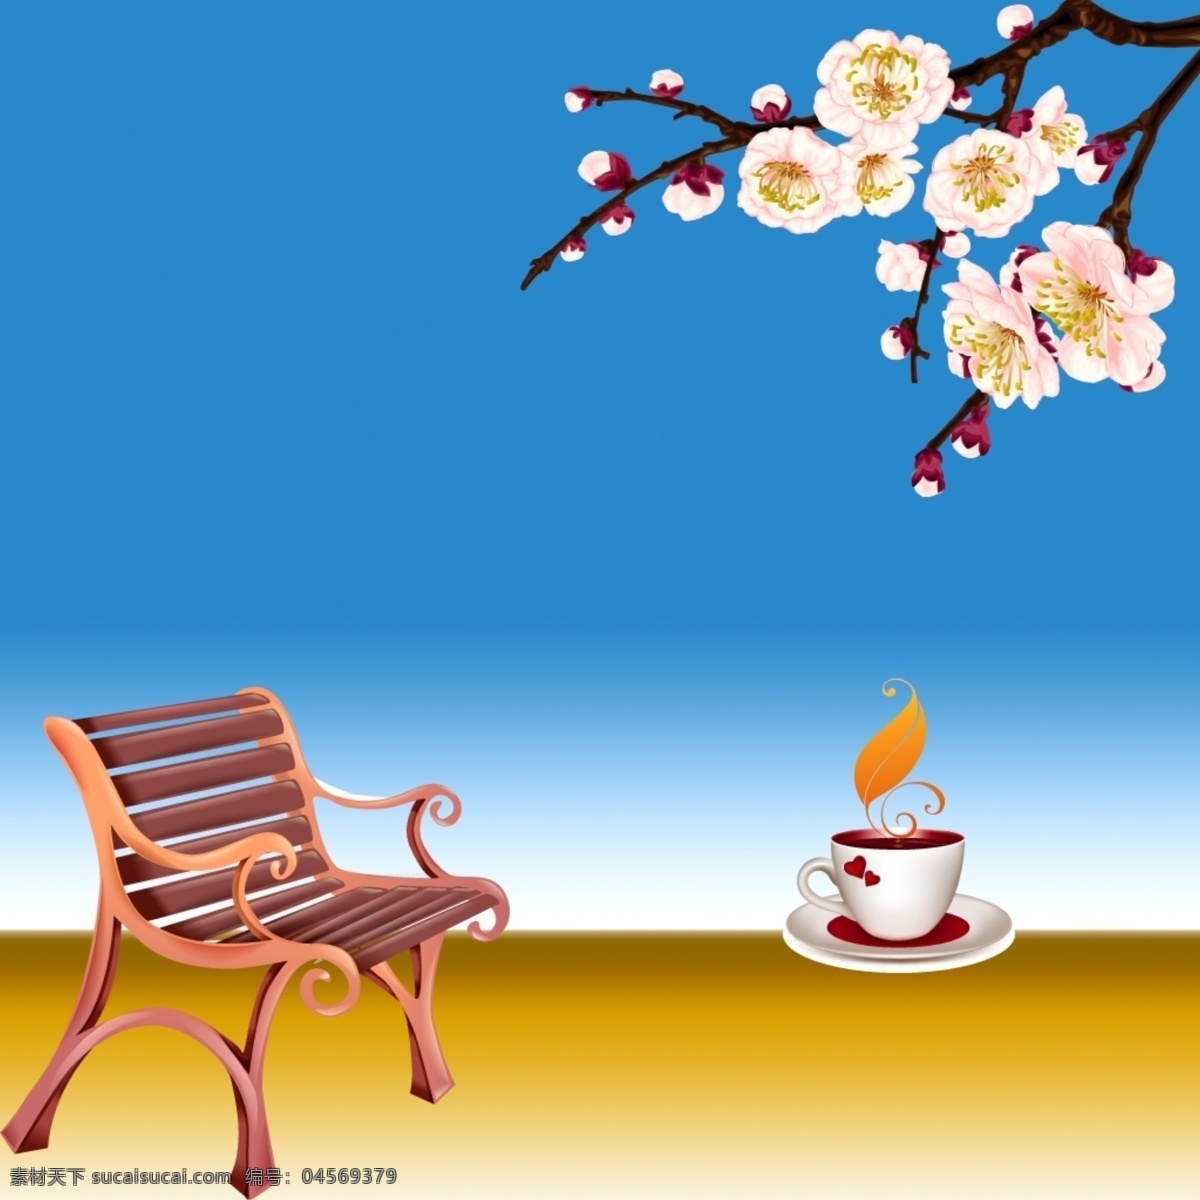 桃花 朵朵 长椅 咖啡 休闲 插画 桃花朵朵 卡通长椅 休闲插画 舒适